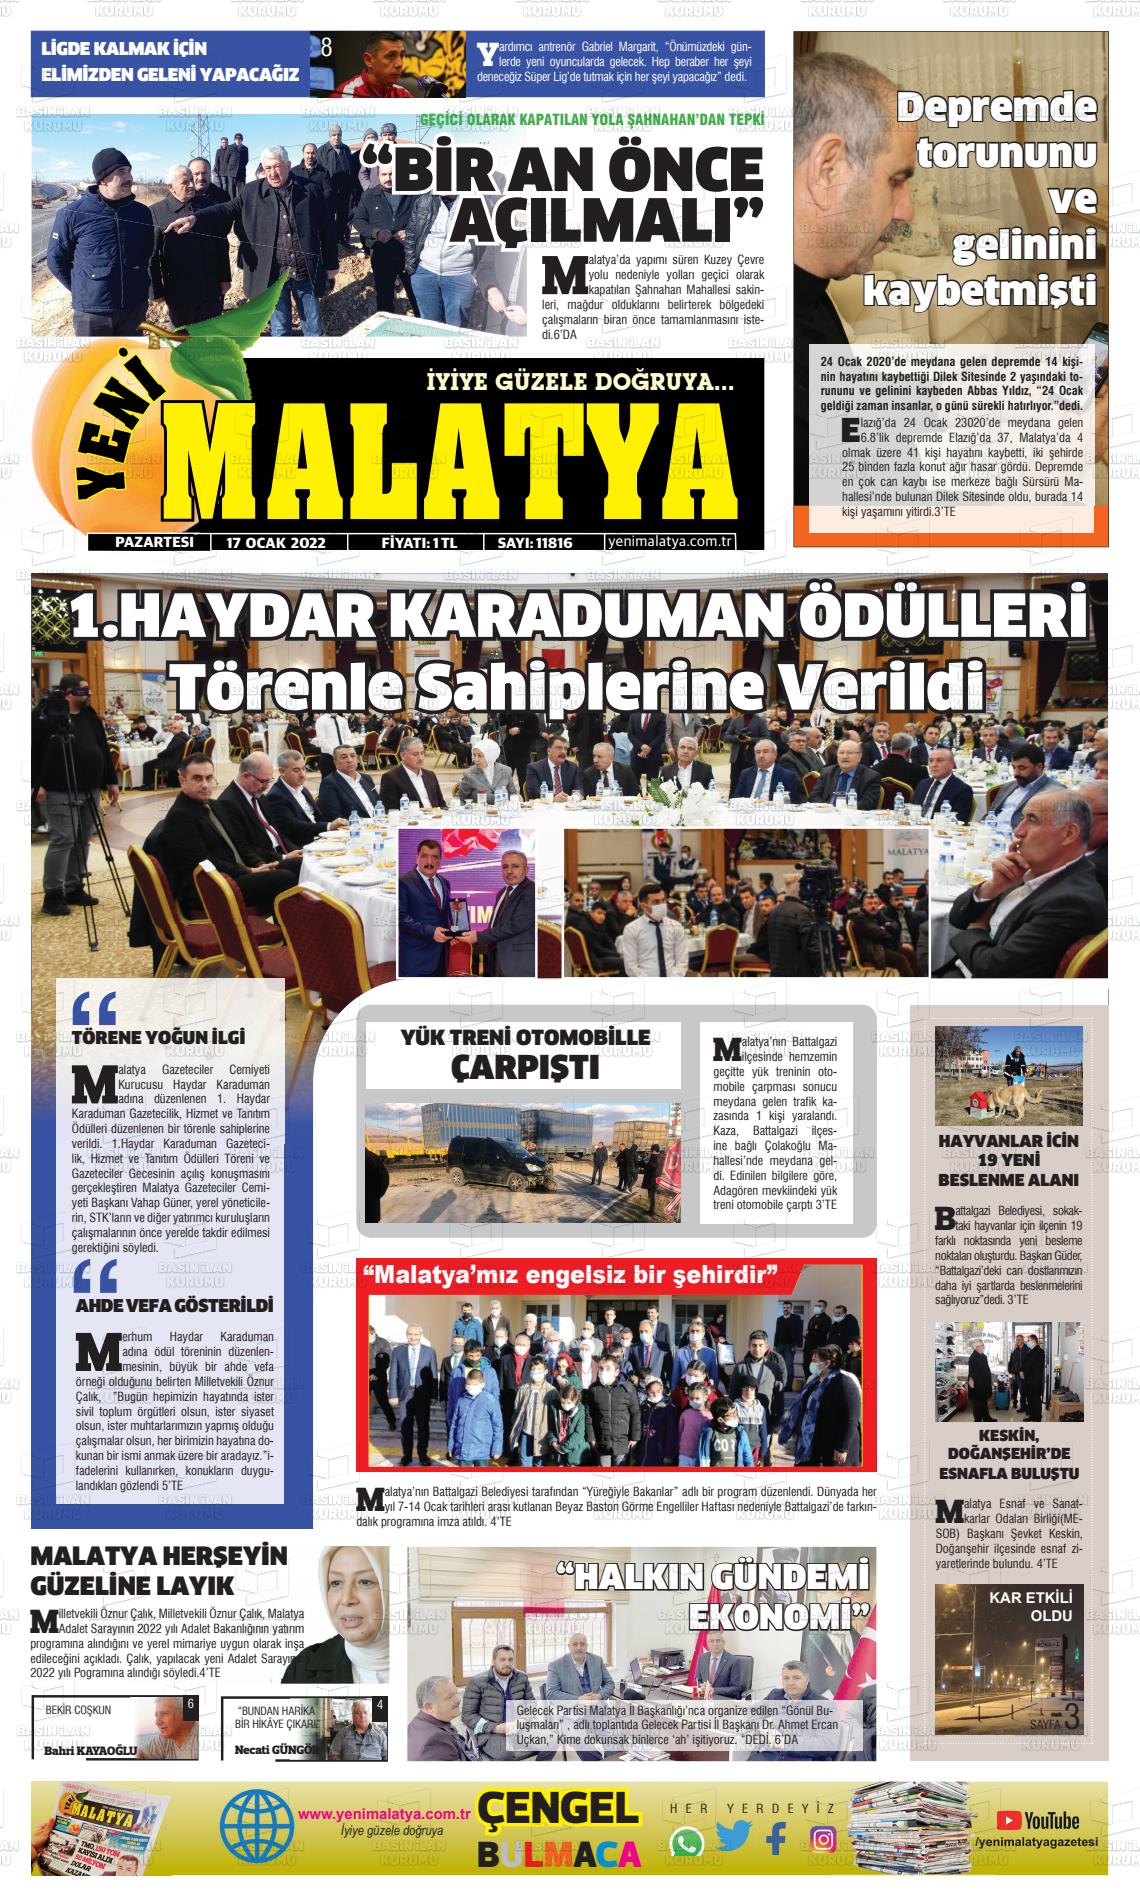 17 Ocak 2022 Yeni Malatya Gazete Manşeti